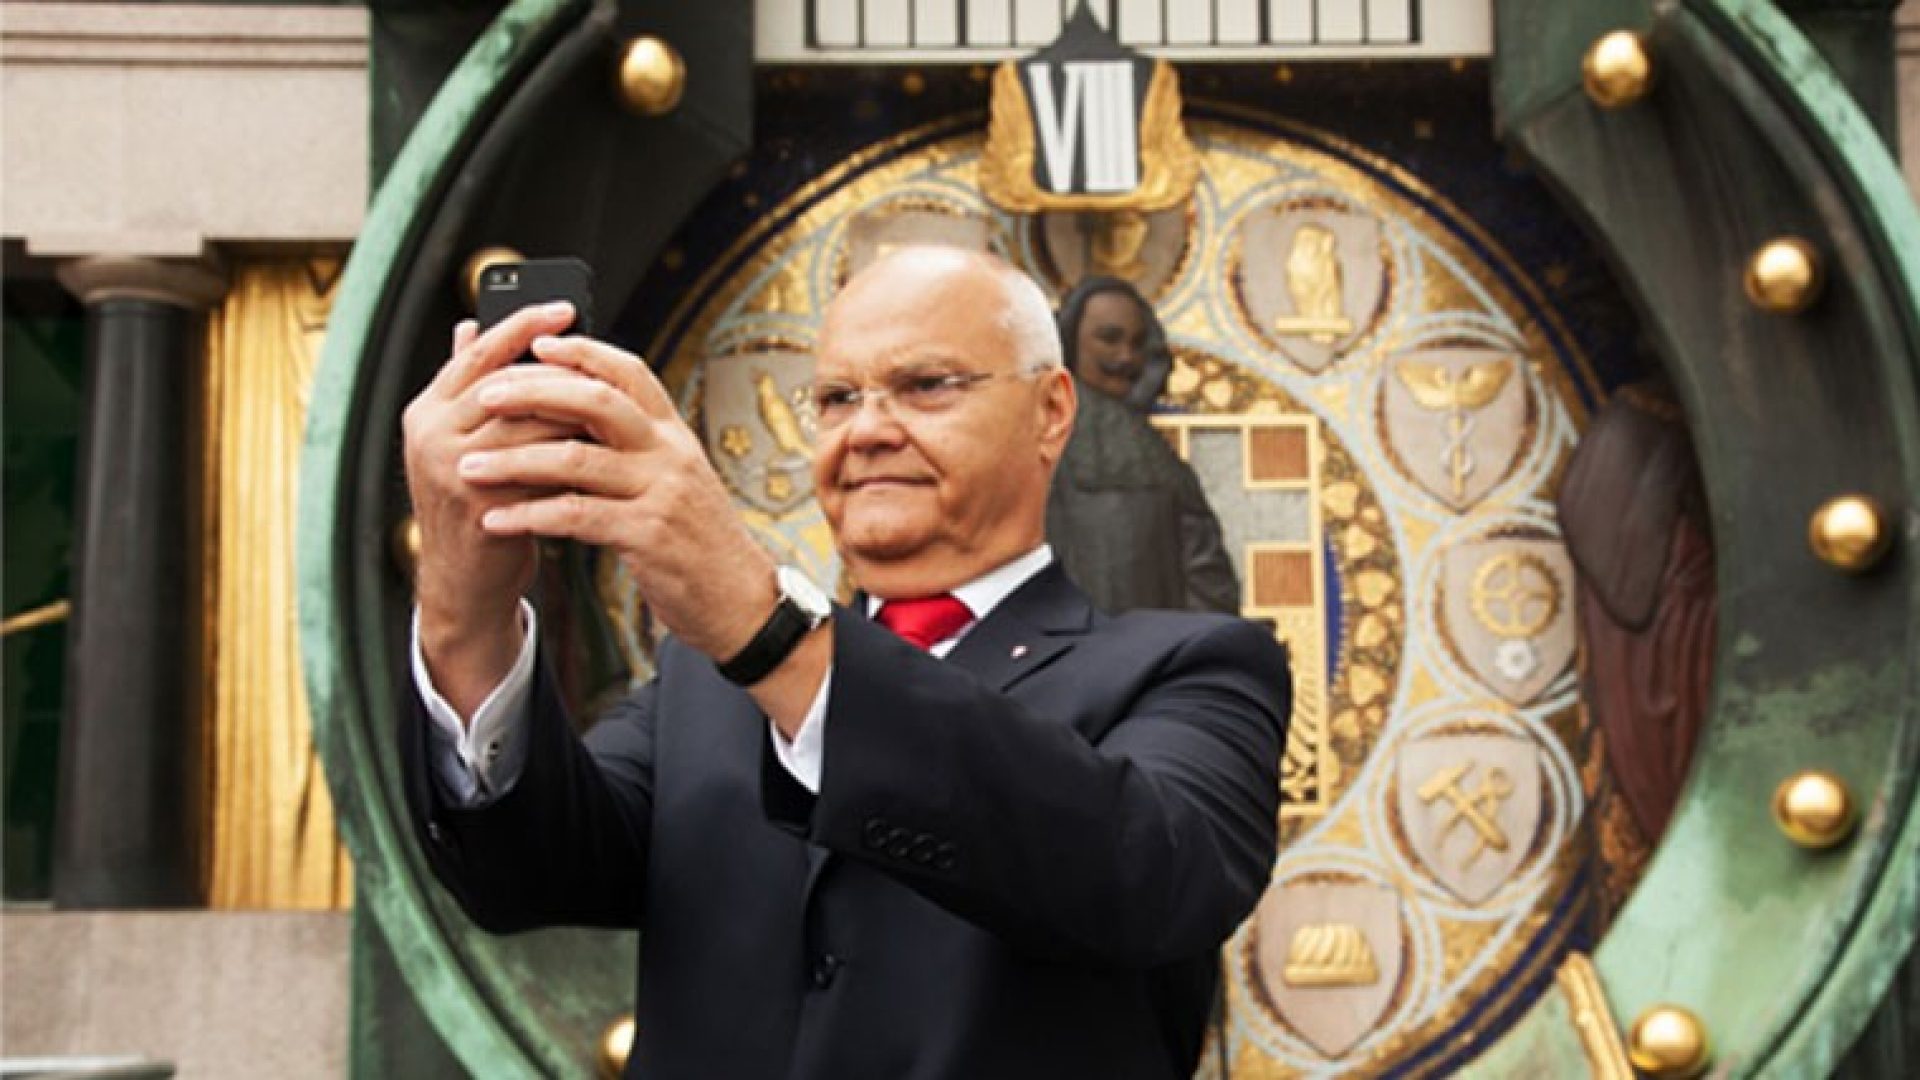 Landtagspräsident Harry Kopietz ließ es sich nicht nehmen, das erste Selfie auf der Plattform zu machen.